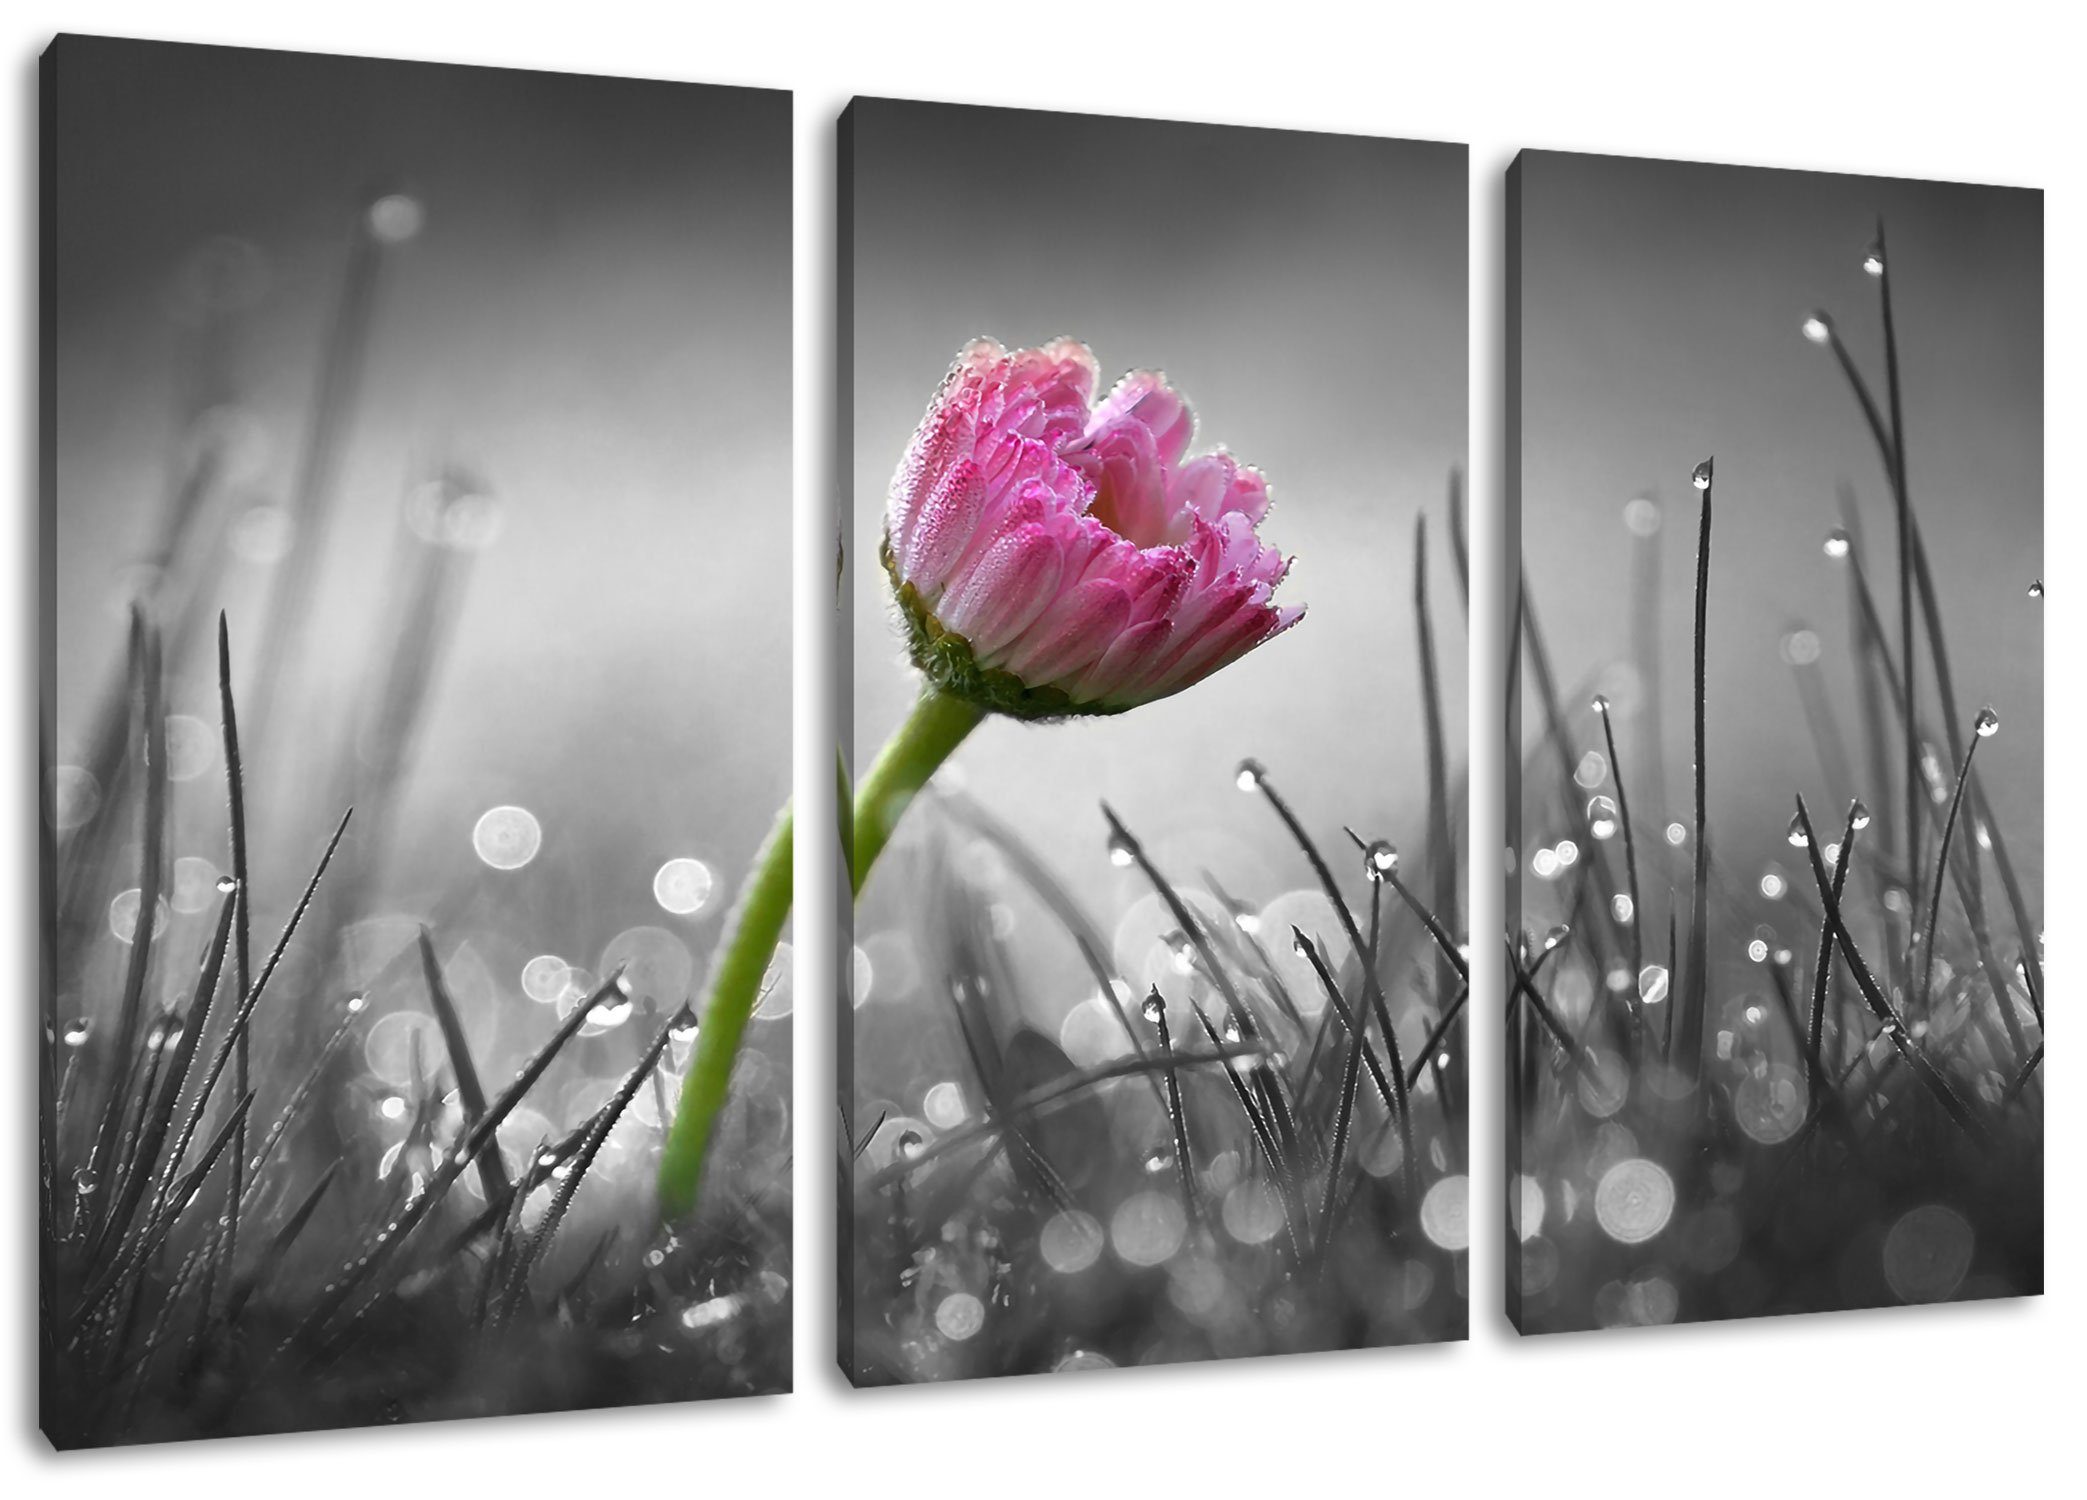 Pixxprint Leinwandbild im rosa (120x80cm) rosa Gänseblümchen (1 bespannt, Gras inkl. Gras, Gänseblümchen St), 3Teiler Leinwandbild Zackenaufhänger im fertig